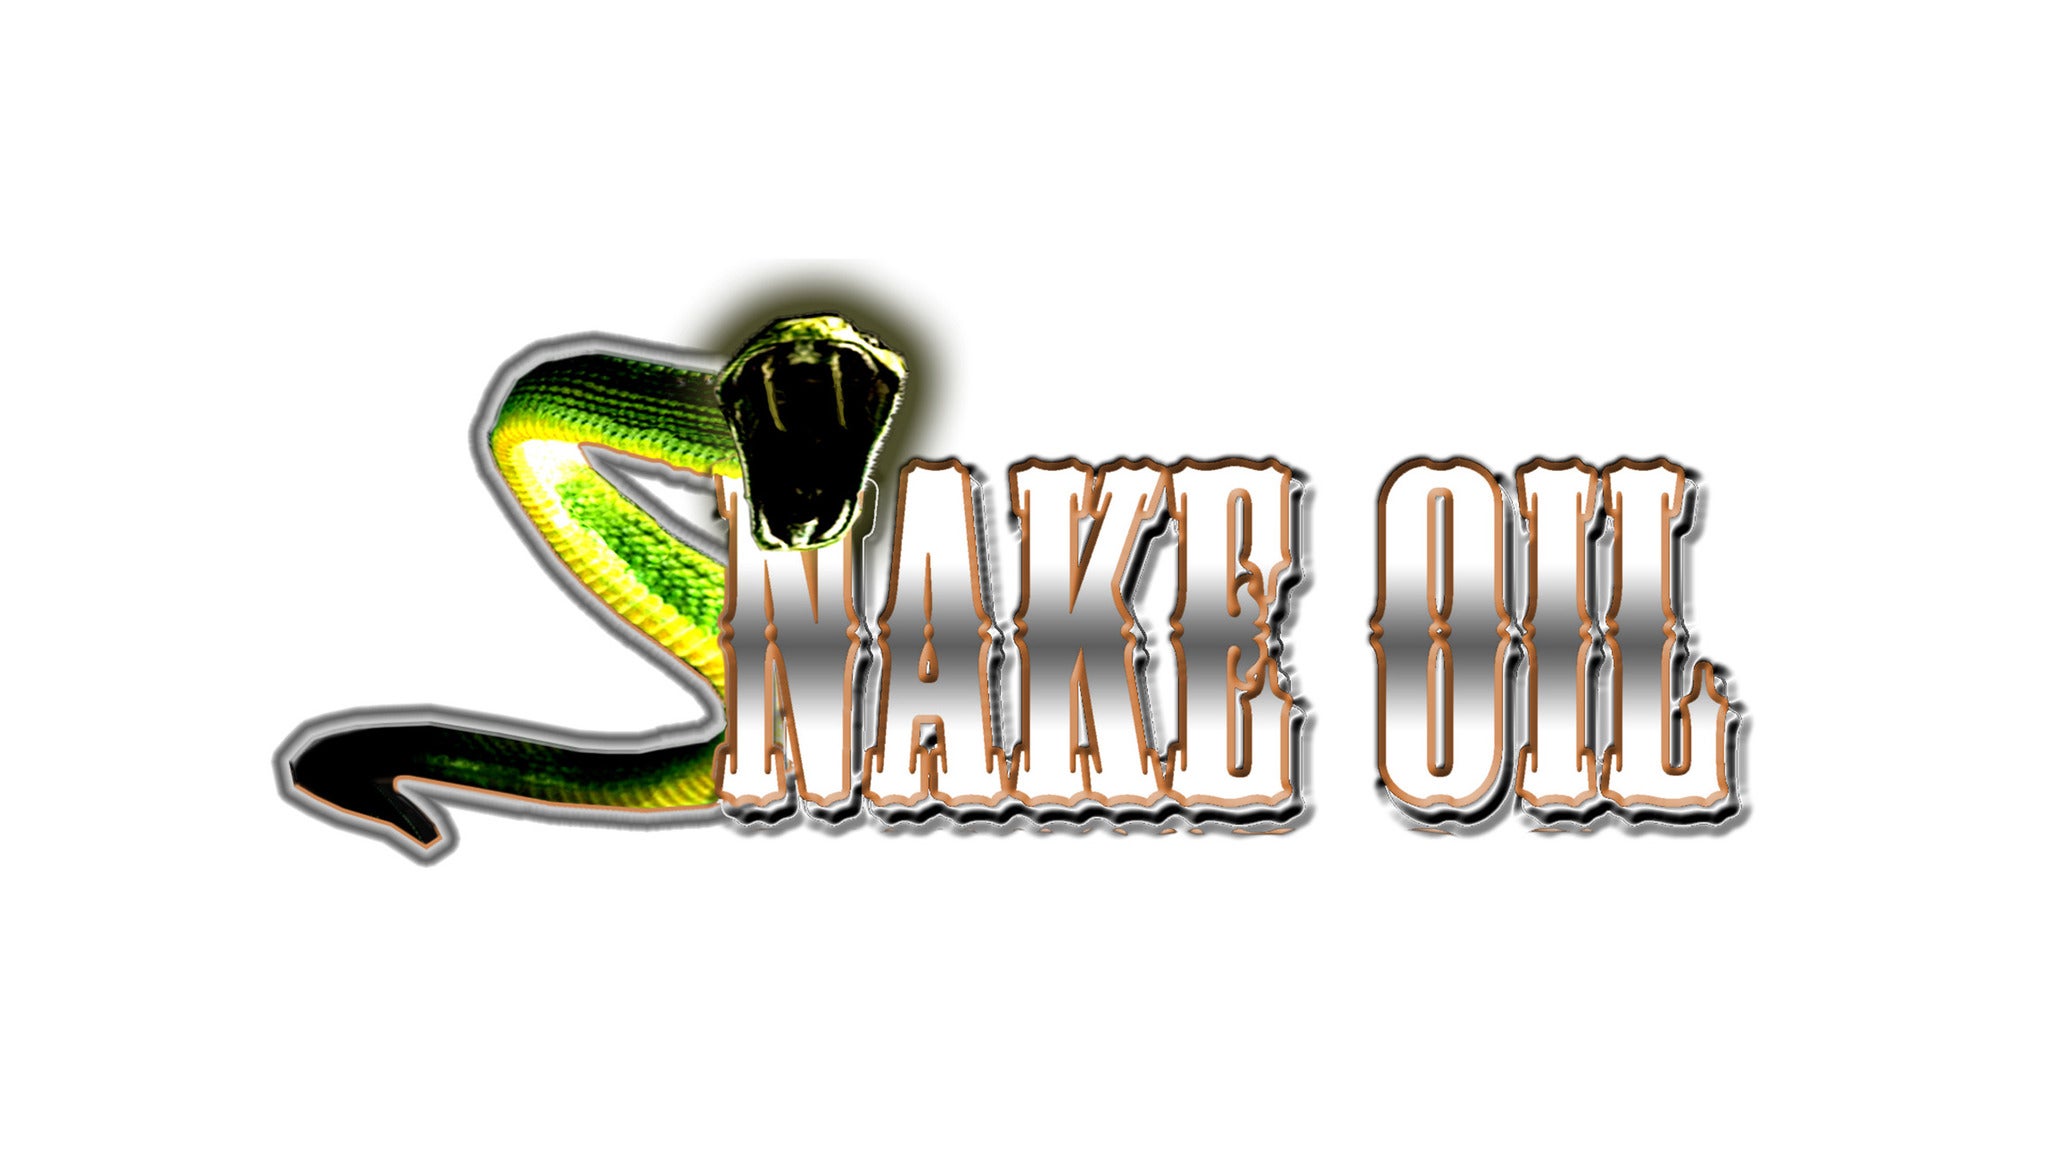 Snake Oil in Enoch promo photo for Media & Social Media presale offer code